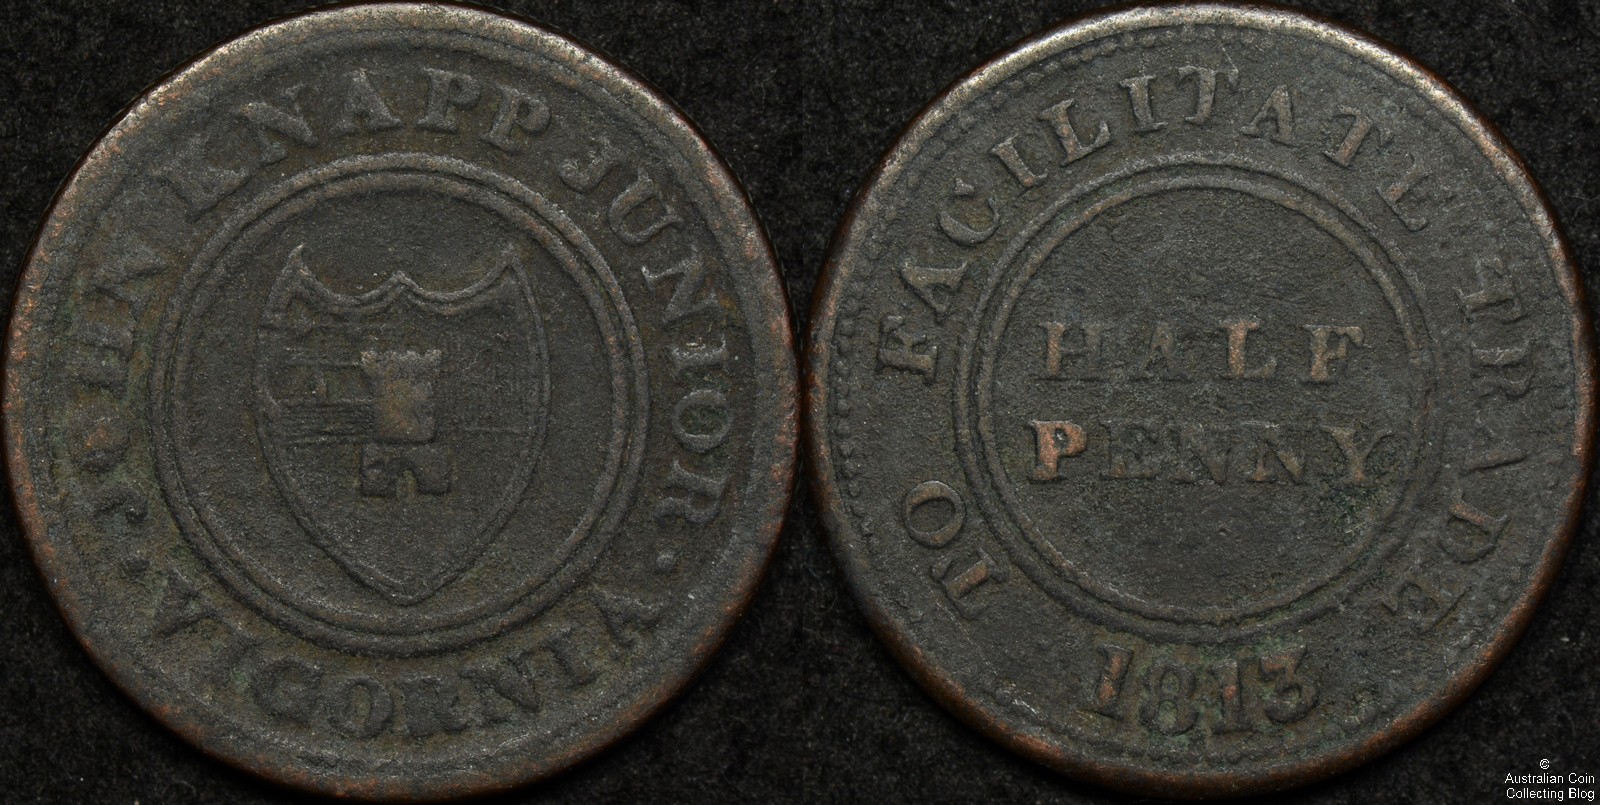 Great Britain 1813 Half Penny Token – John Knapp Junior